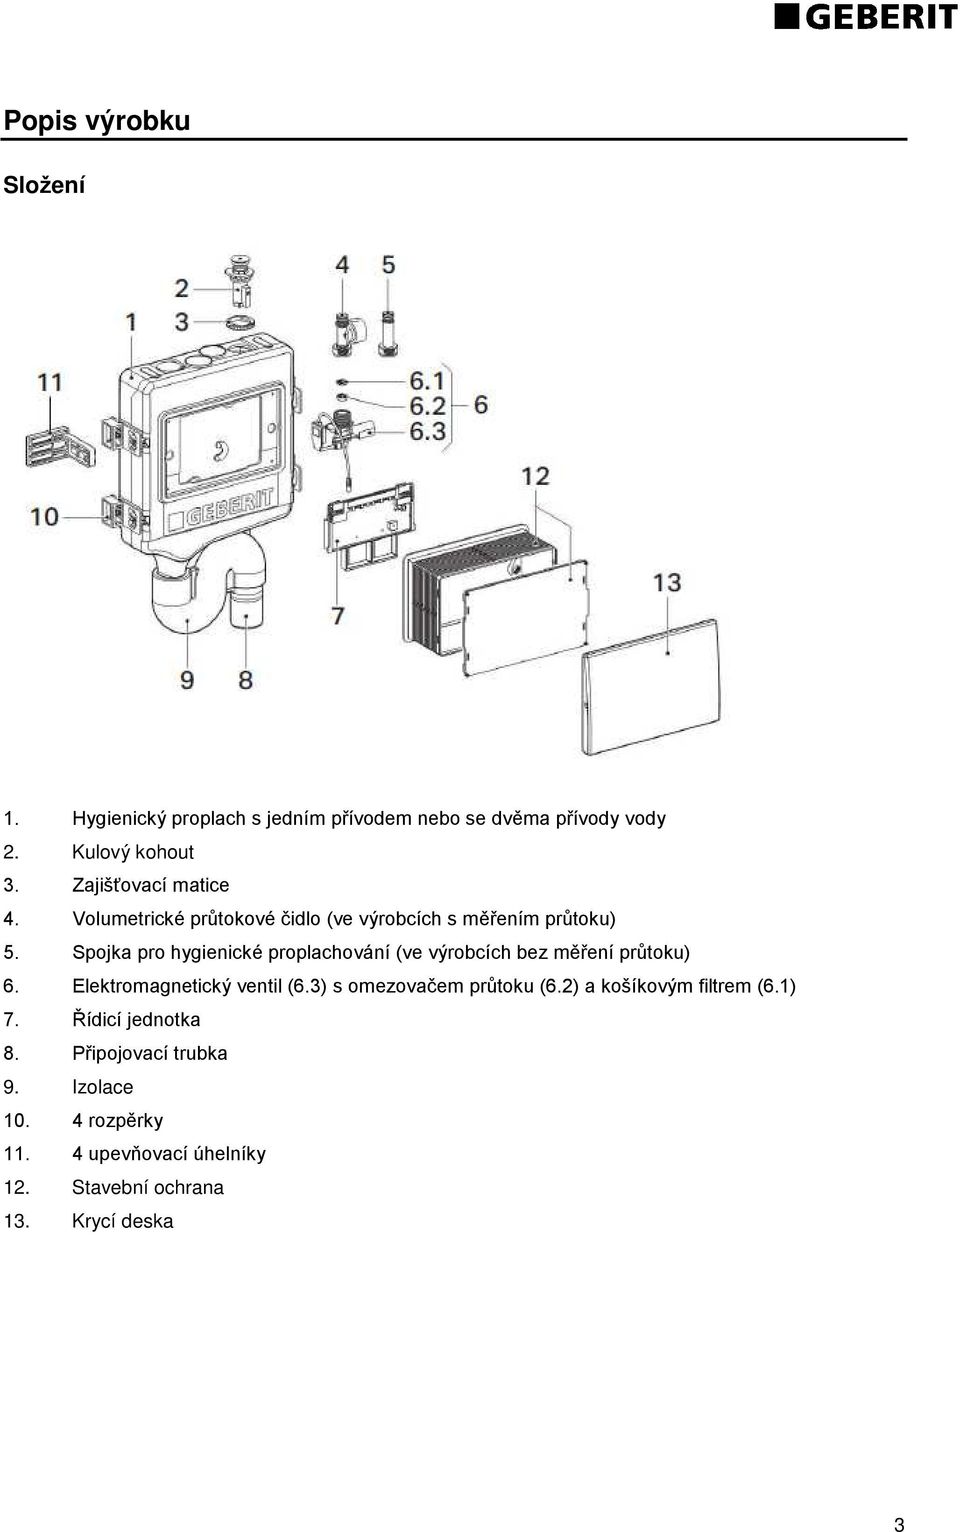 Spojka pro hygienické proplachování (ve výrobcích bez měření průtoku) 6. Elektromagnetický ventil (6.